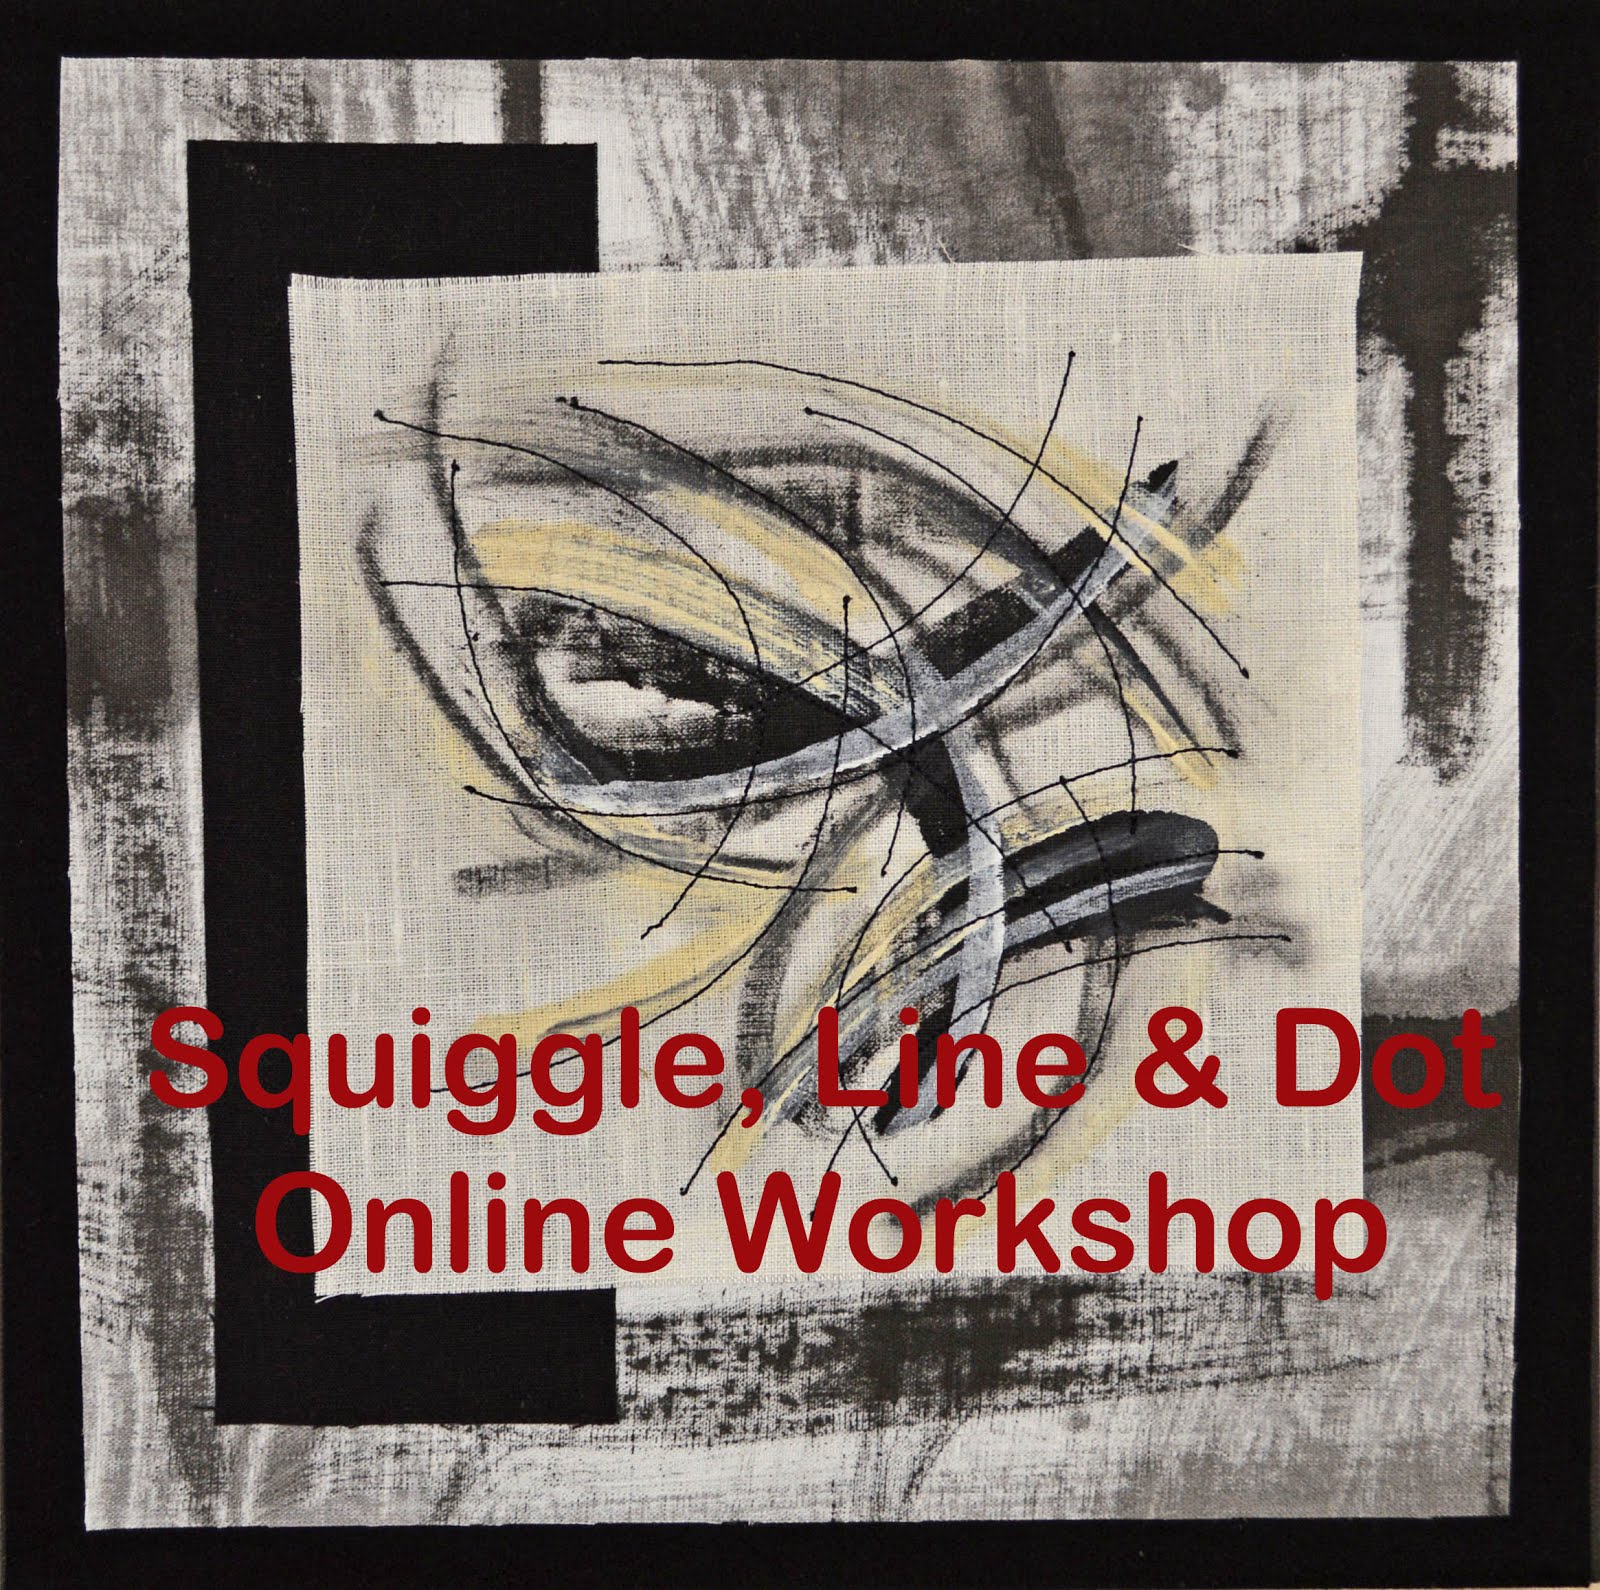 Squiggle, Line & Dot Online Workshop